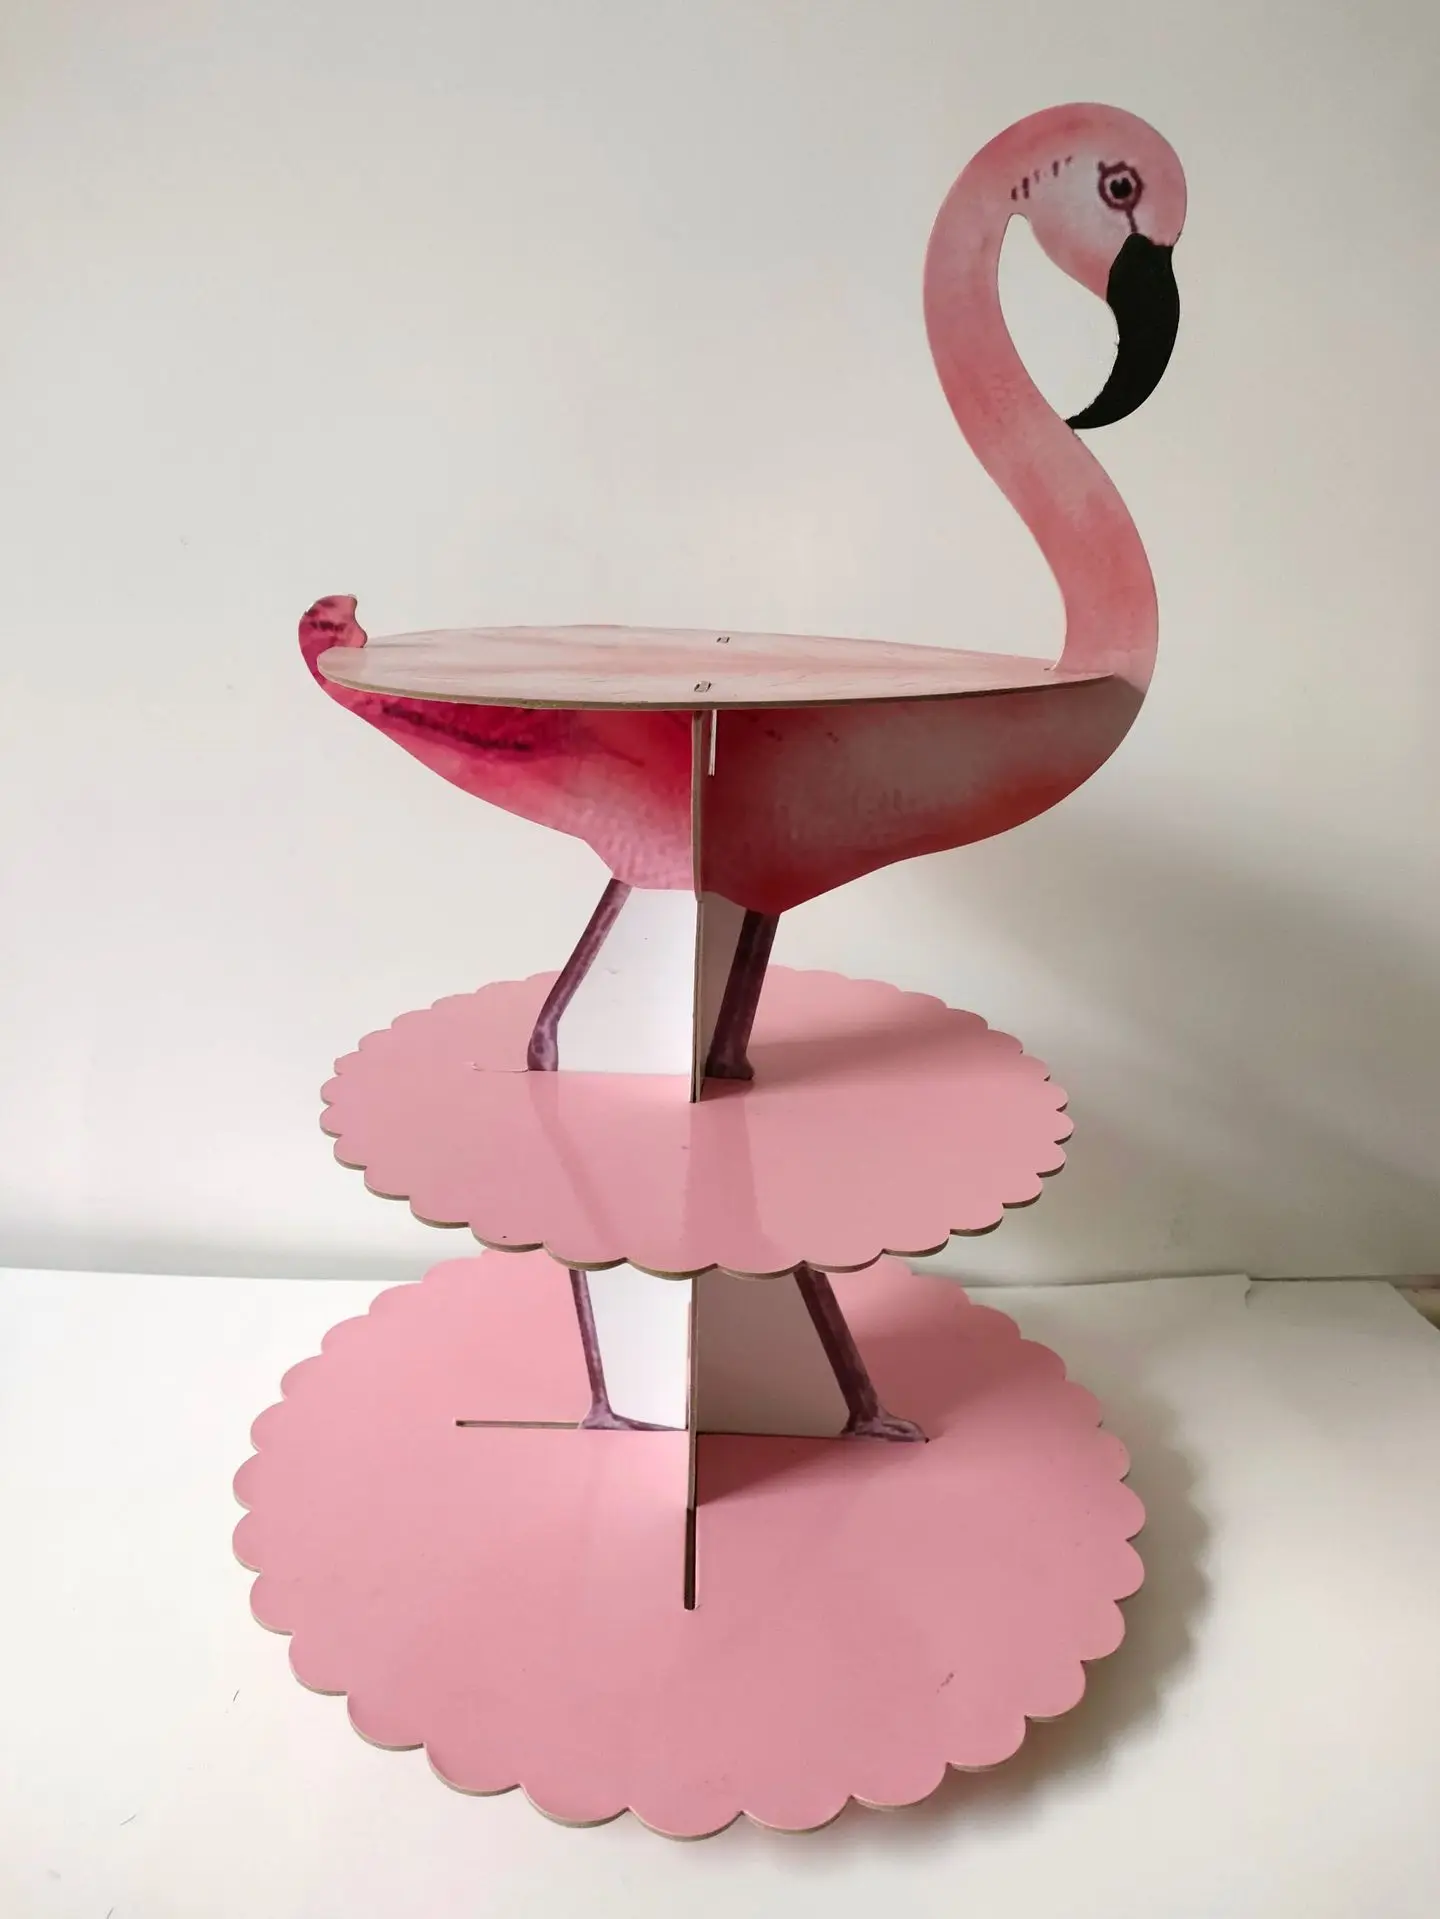 

1Set Cupcake Stand Baby Shower Decorations Flamingo Cake Decorating Tools Wedding Decoration Celebration